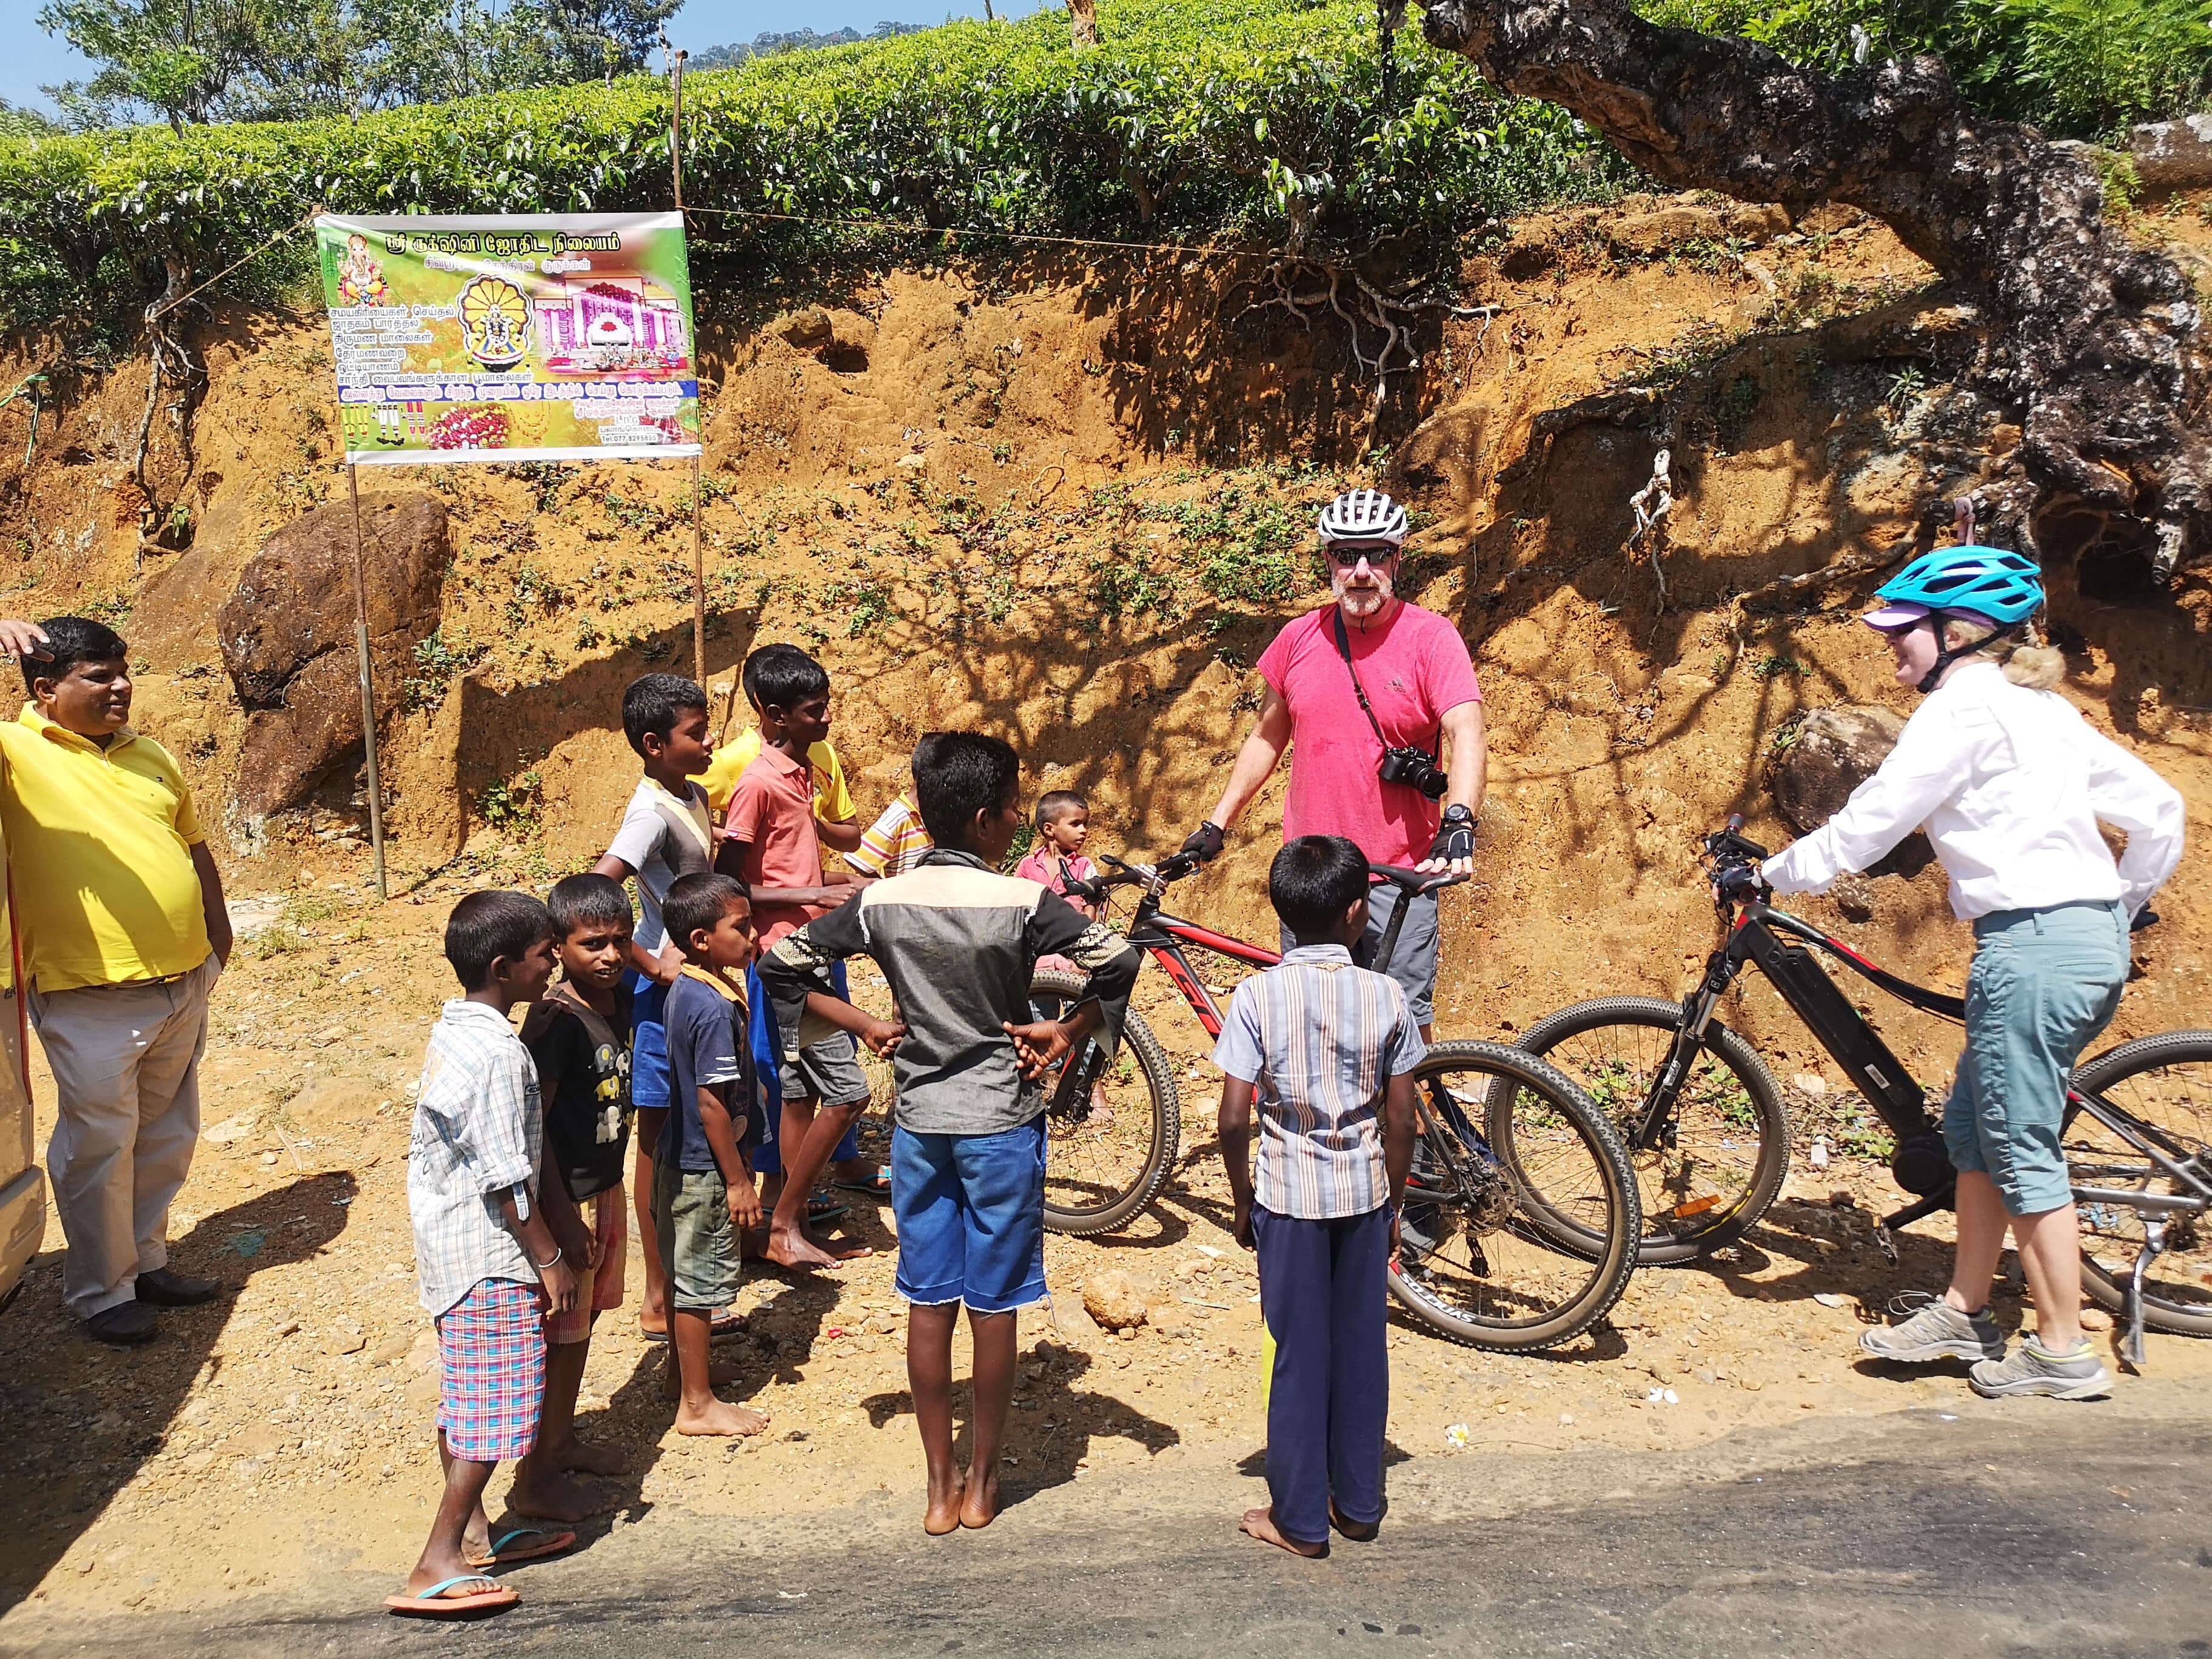 يلتقي راكبو الدراجات بأشخاص في جولة ركوب الدراجات في كاندي إلى نوارا إليا سريلانكا